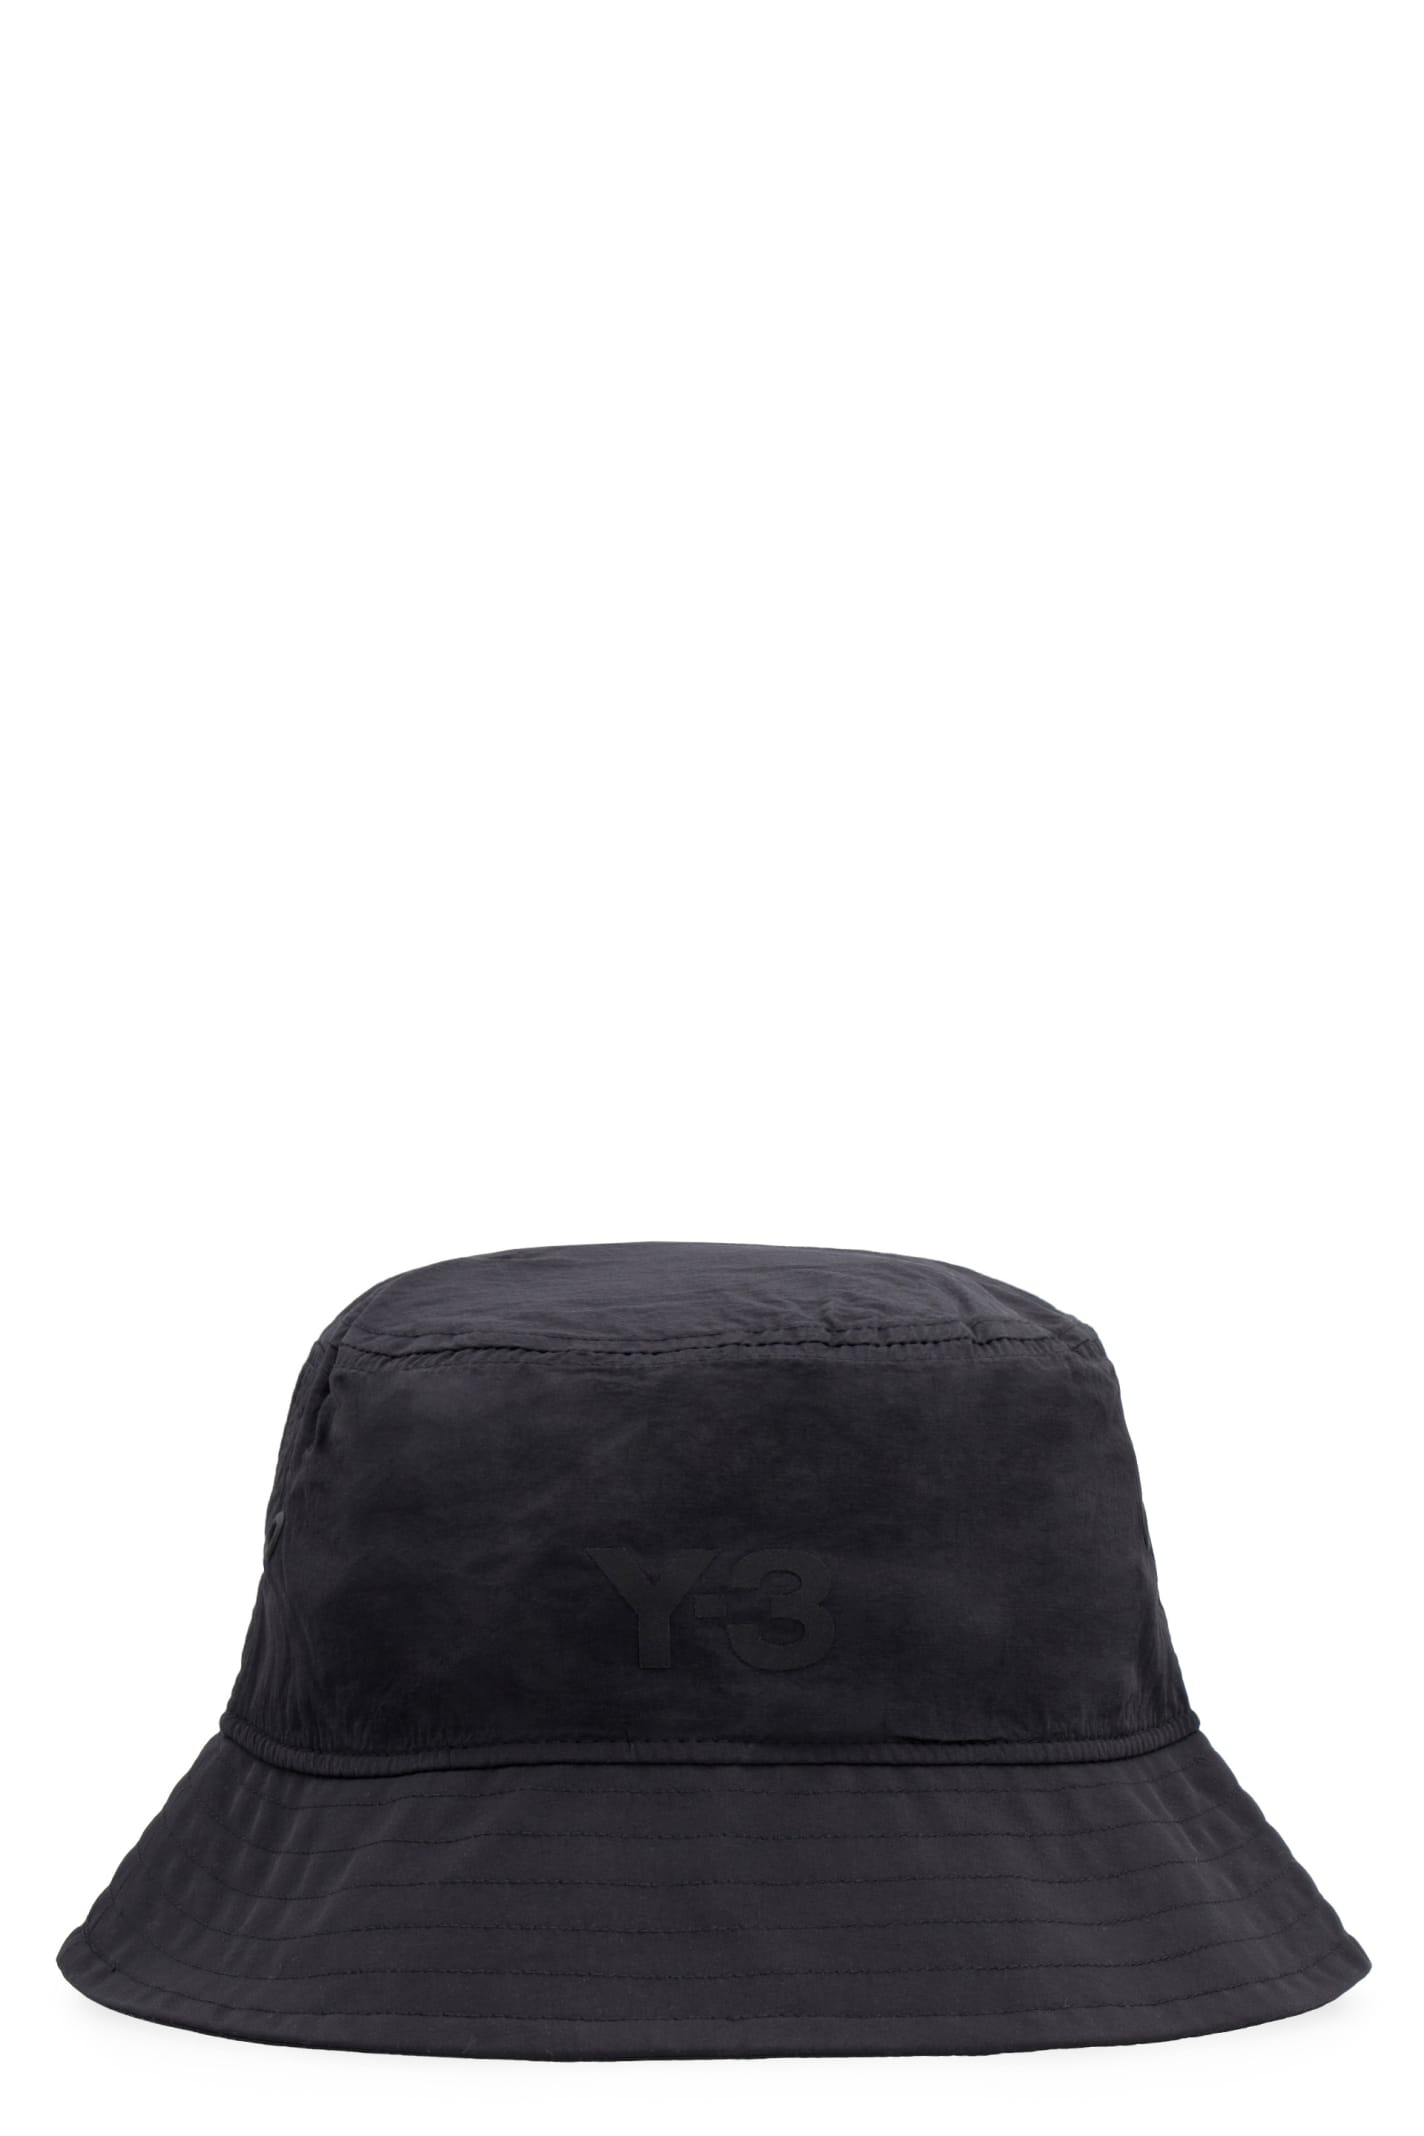 Y-3 Nylon Bucket Hat